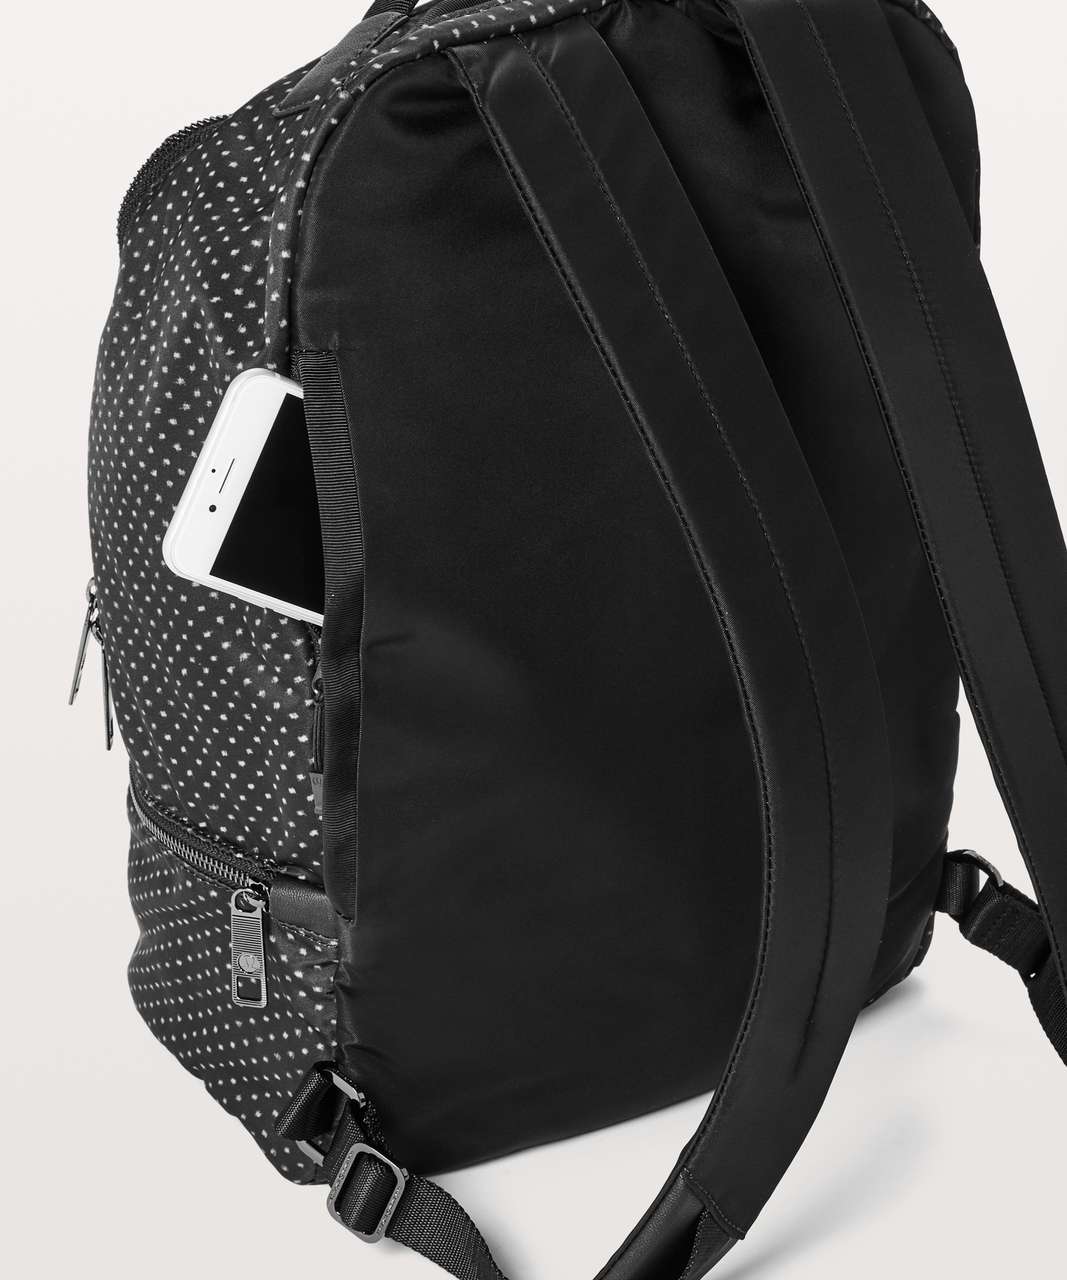 Lululemon City Adventurer Backpack *17L - Ikat Needle Dot Grey Black / Black